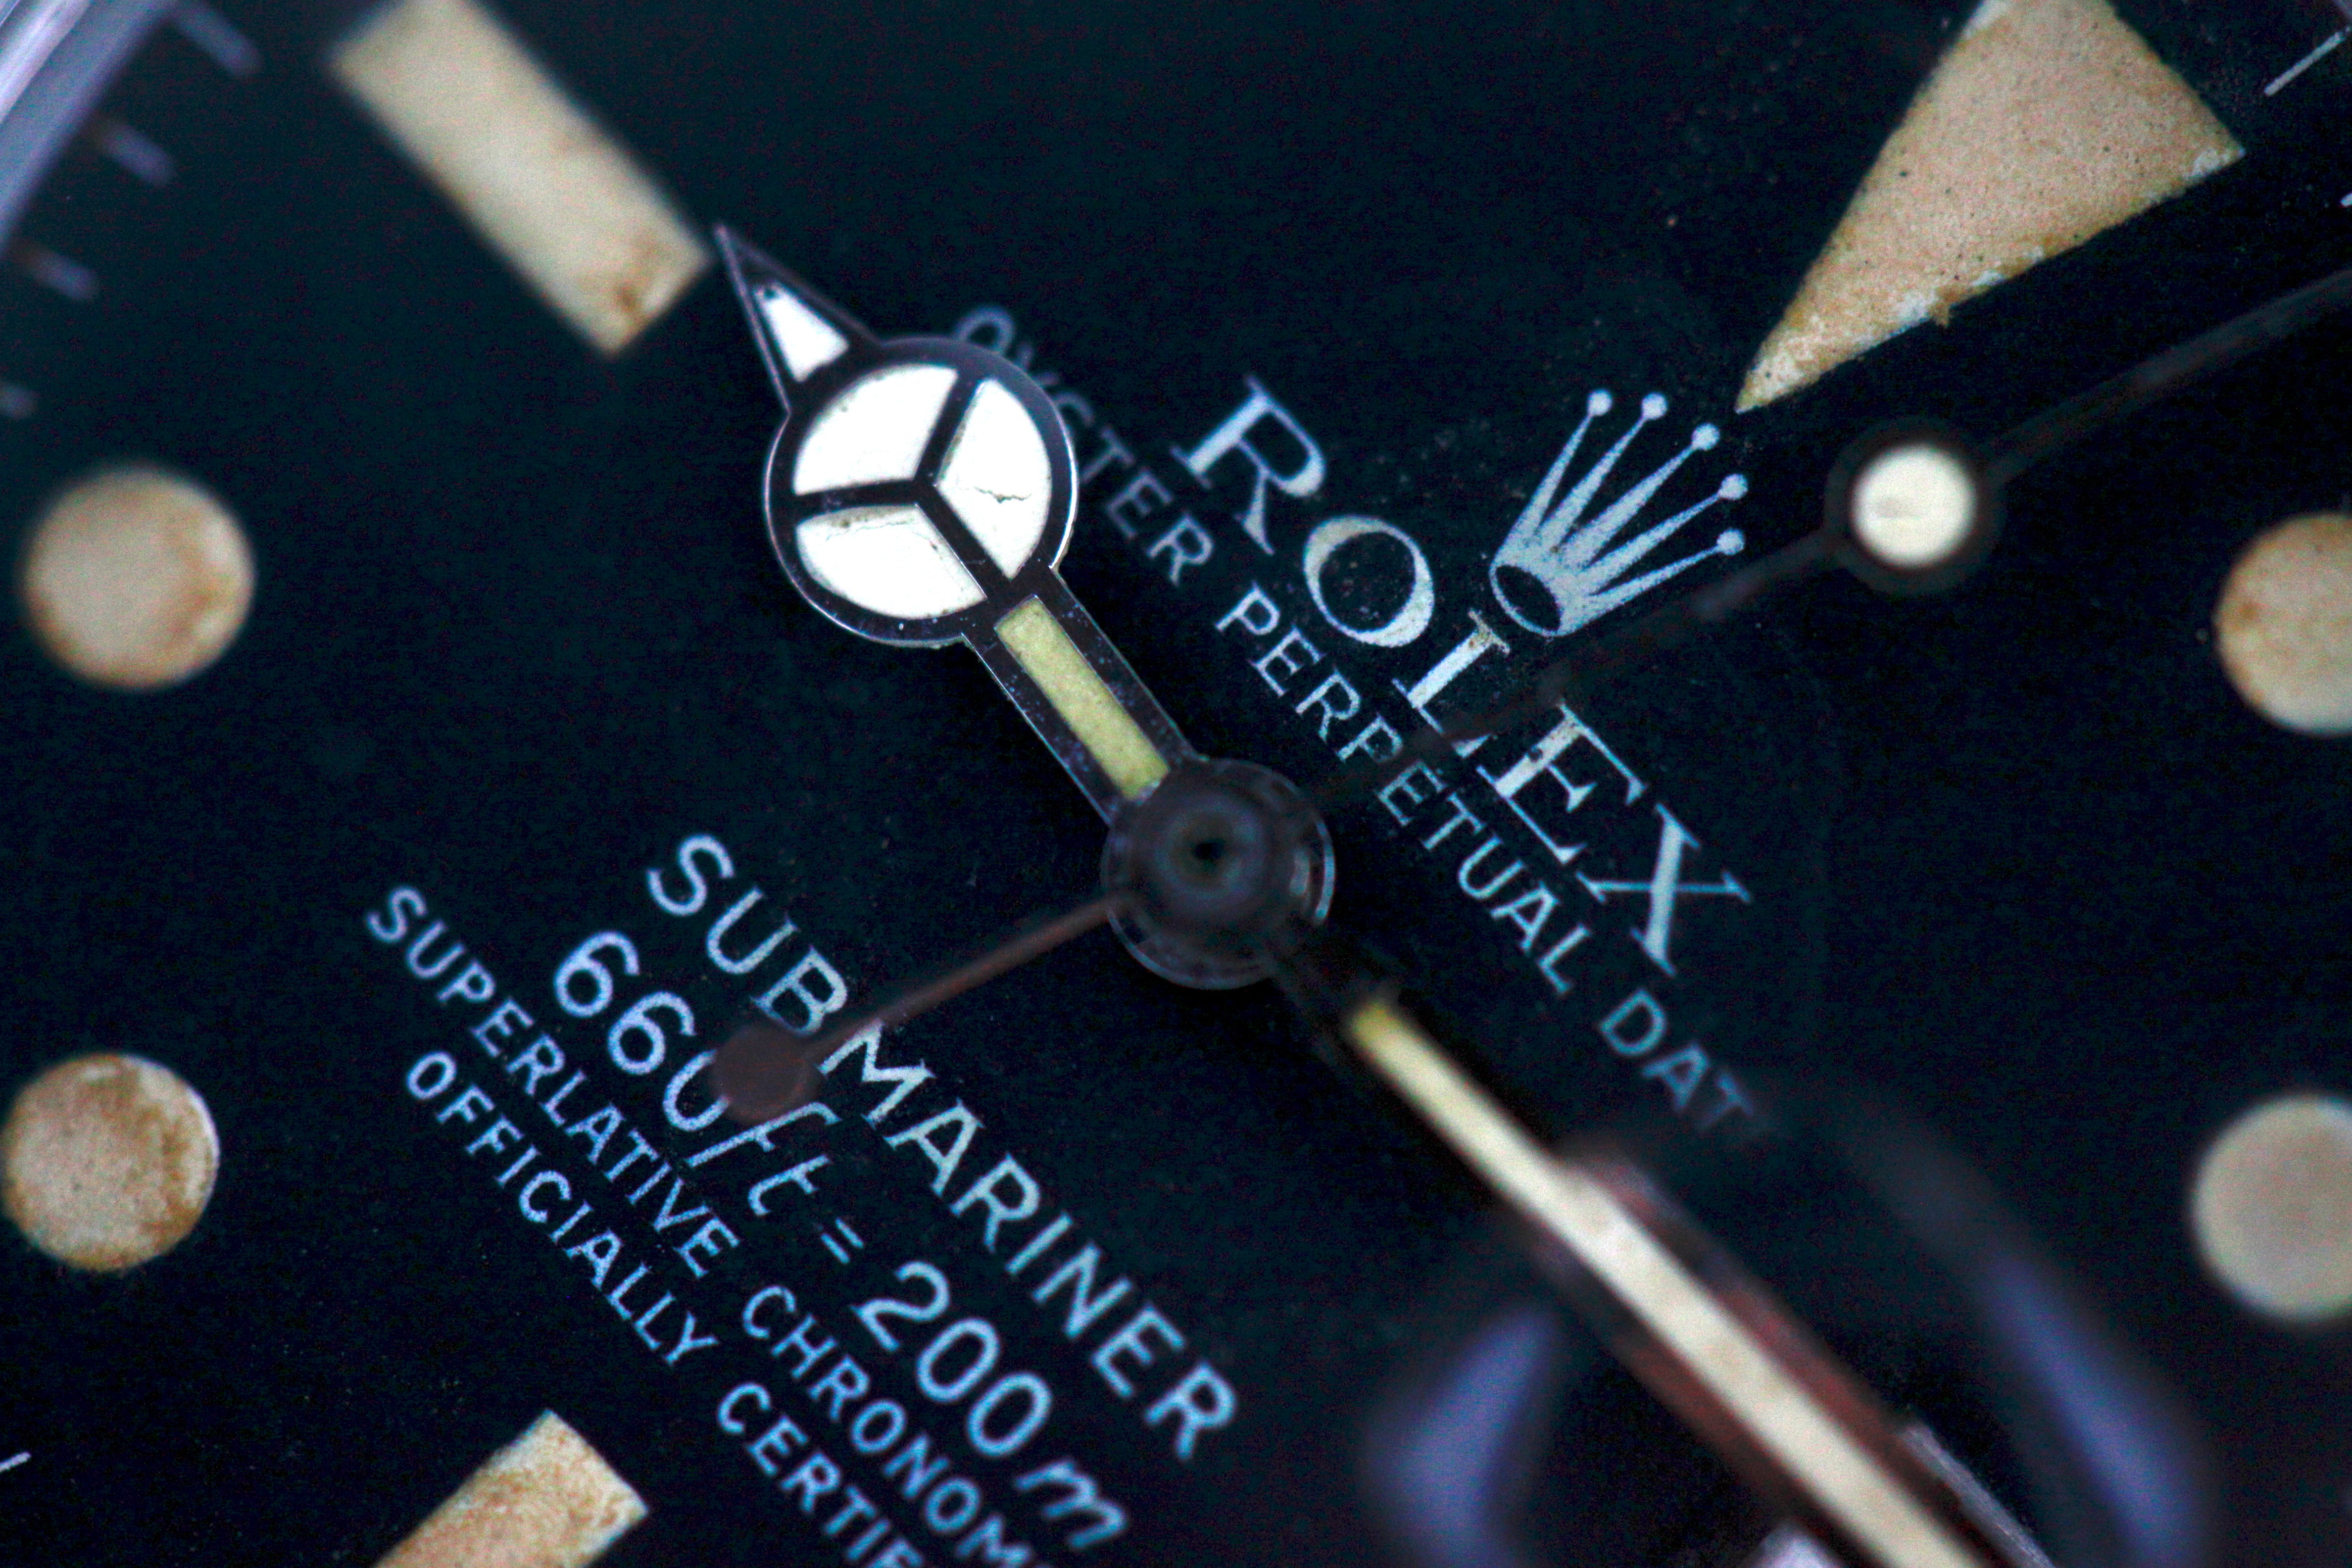 Rolex Submariner Ref 1680 Amazing tritium dial